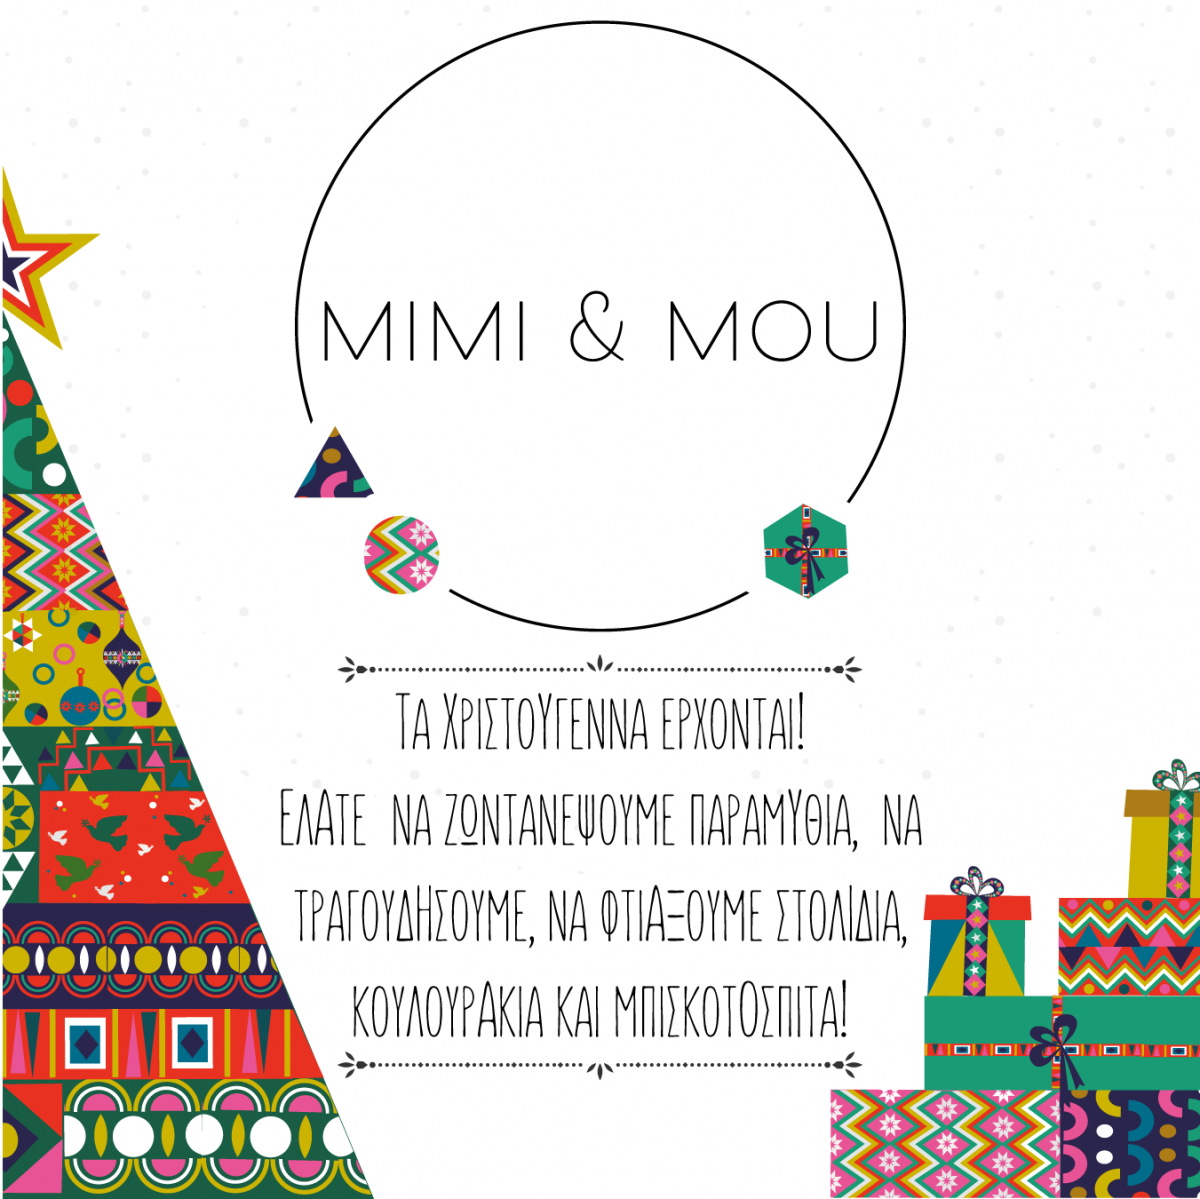 Τα Χριστούγεννα έρχονται στον πολυχώρο για παιδιά Mimi & Mou! Παραμύθια,  τραγούδια, στολίδια, κατασκευές  εμπνευσμένα από διάσημες χριστουγεννιάτικες ιστορίες!